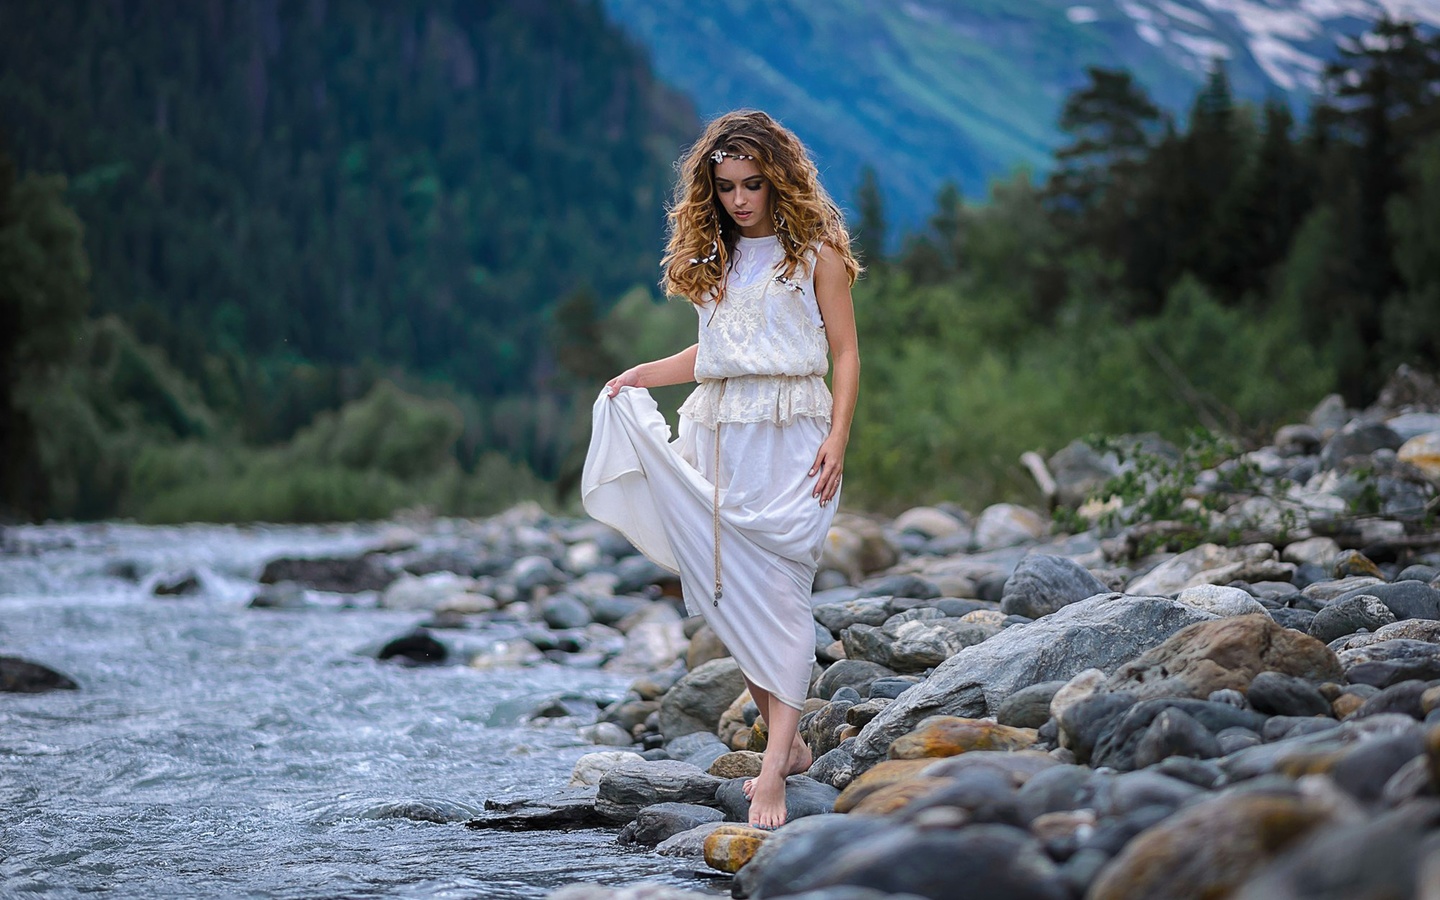 Превосходная милашка снимает белое платье на берегу реки